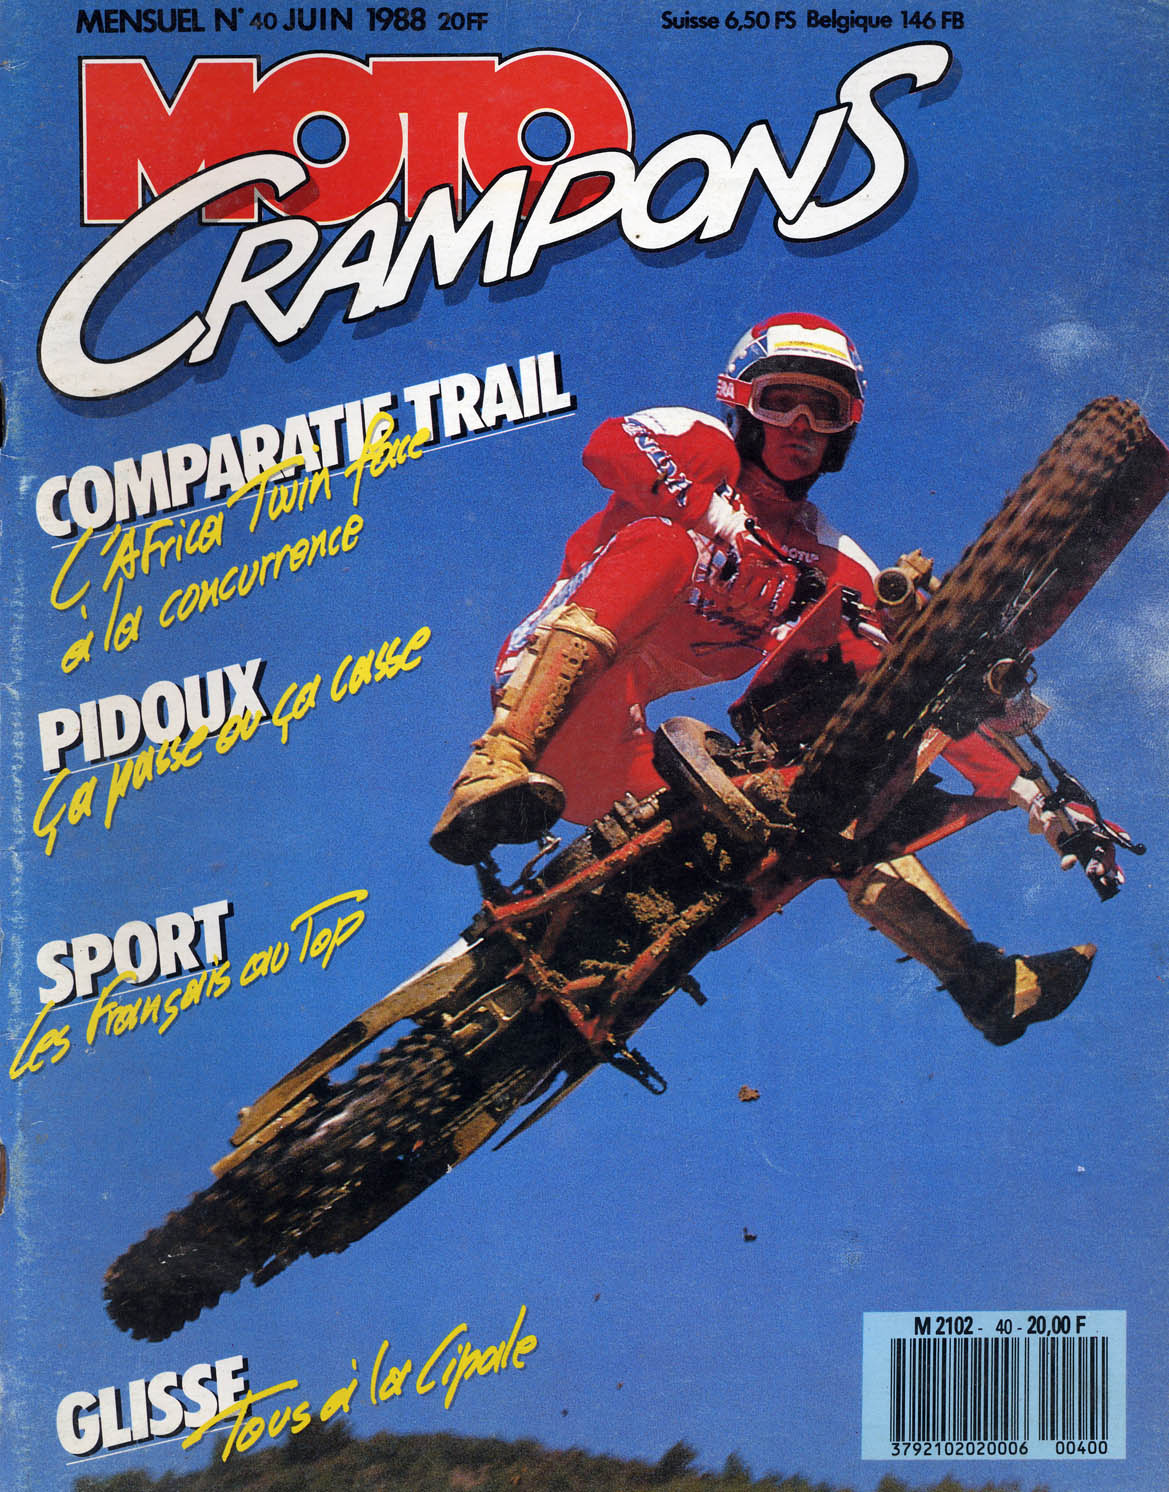 Jean-Michel fait la couverture de Moto Crampons de Juin 1988